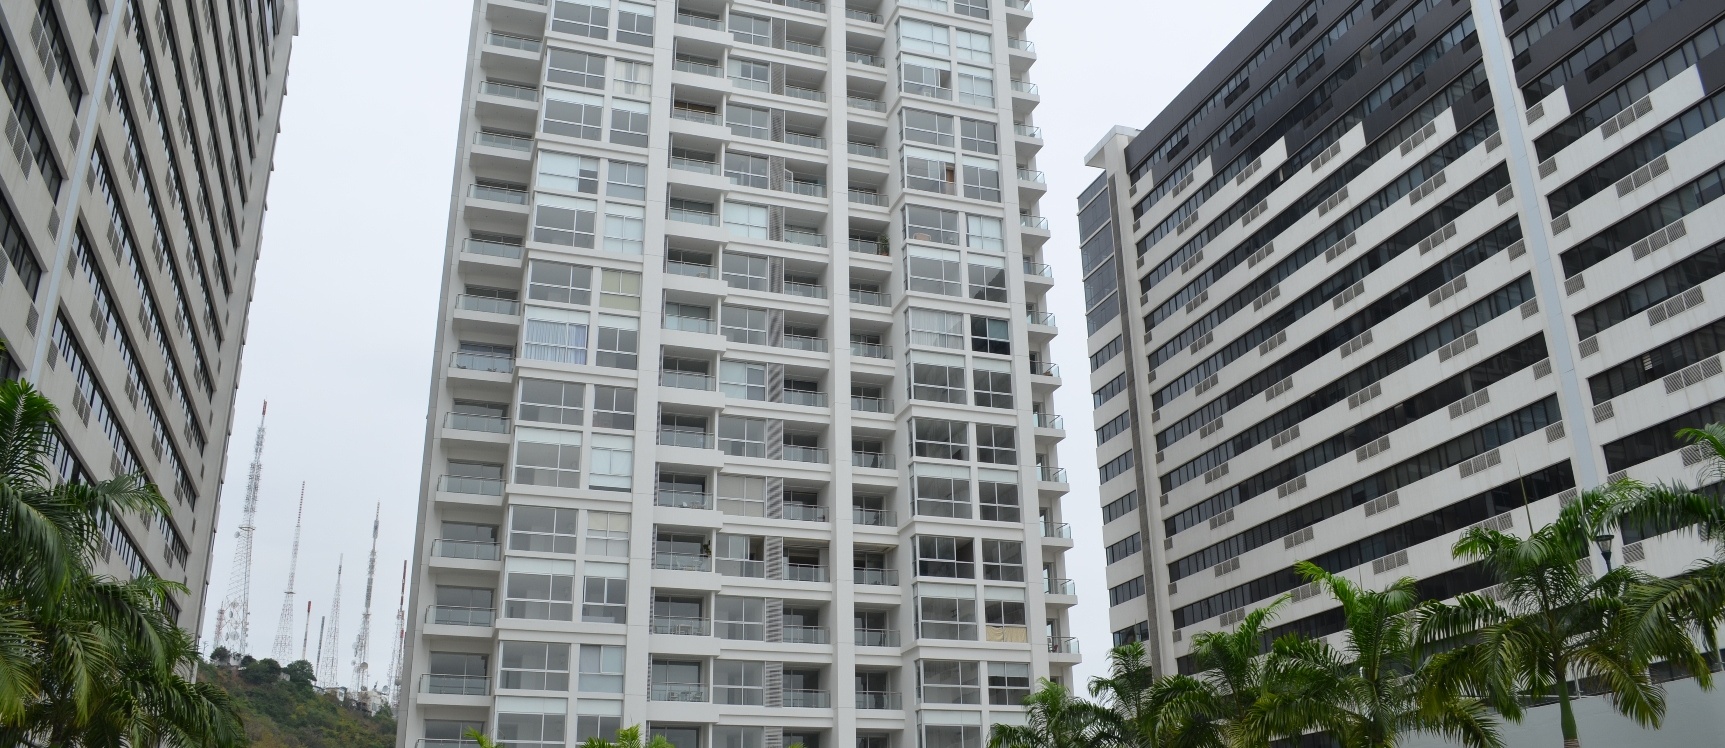 GeoBienes - Departamento en alquiler  en edificio Spazio sector Puerto Santa Ana - Plusvalia Guayaquil Casas de venta y alquiler Inmobiliaria Ecuador